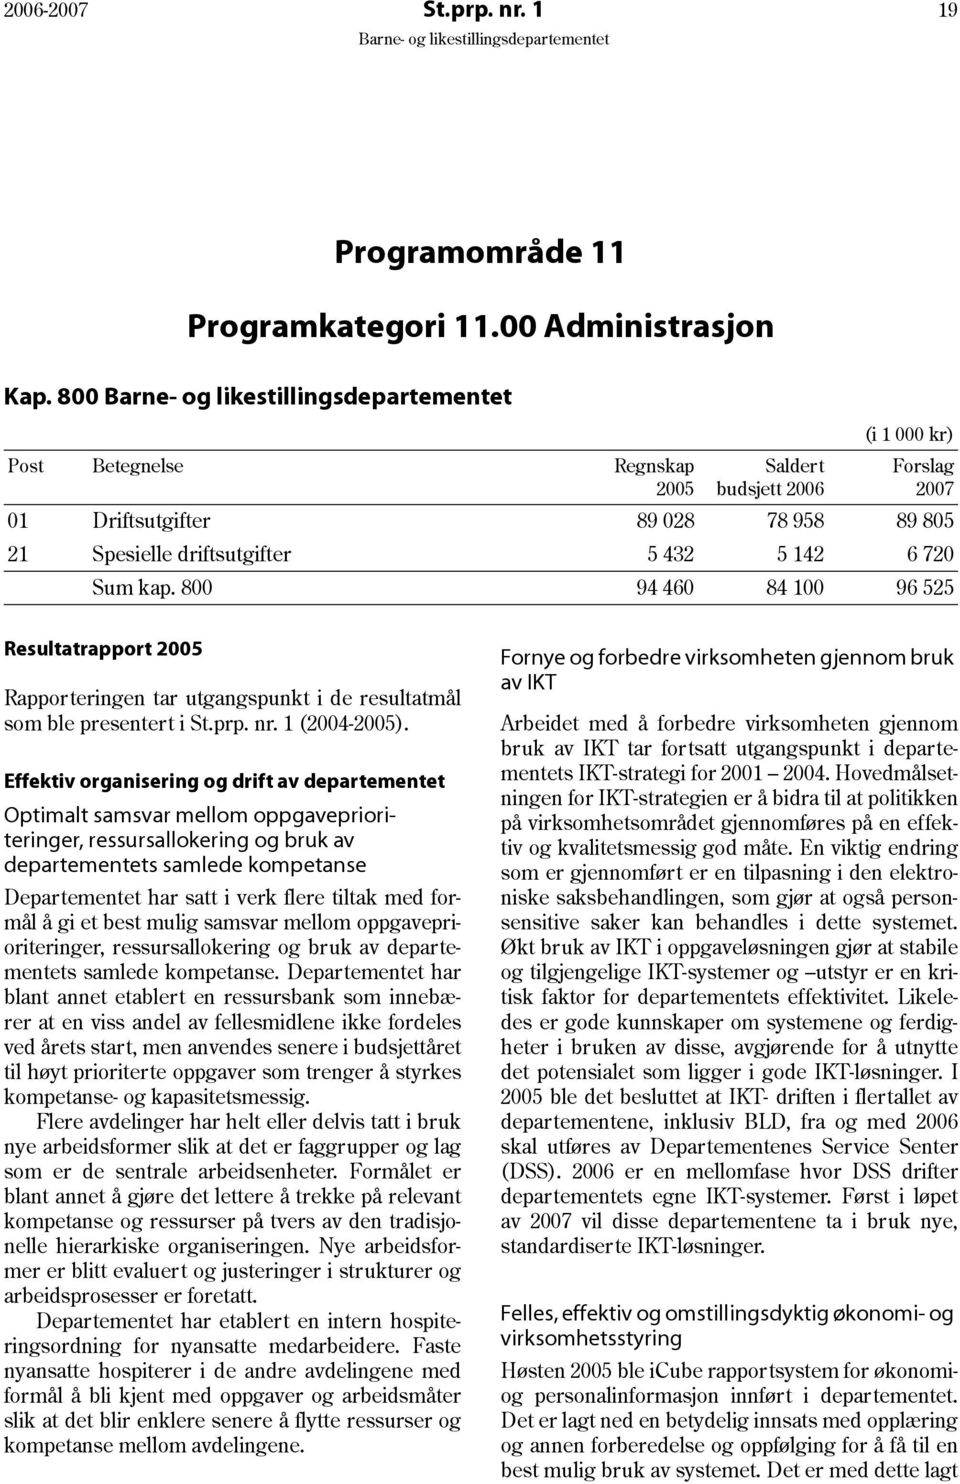 800 94 460 84 100 96 525 Resultatrapport 2005 Rapporteringen tar utgangspunkt i de resultatmål som ble presentert i St.prp. nr. 1 (2004-2005).